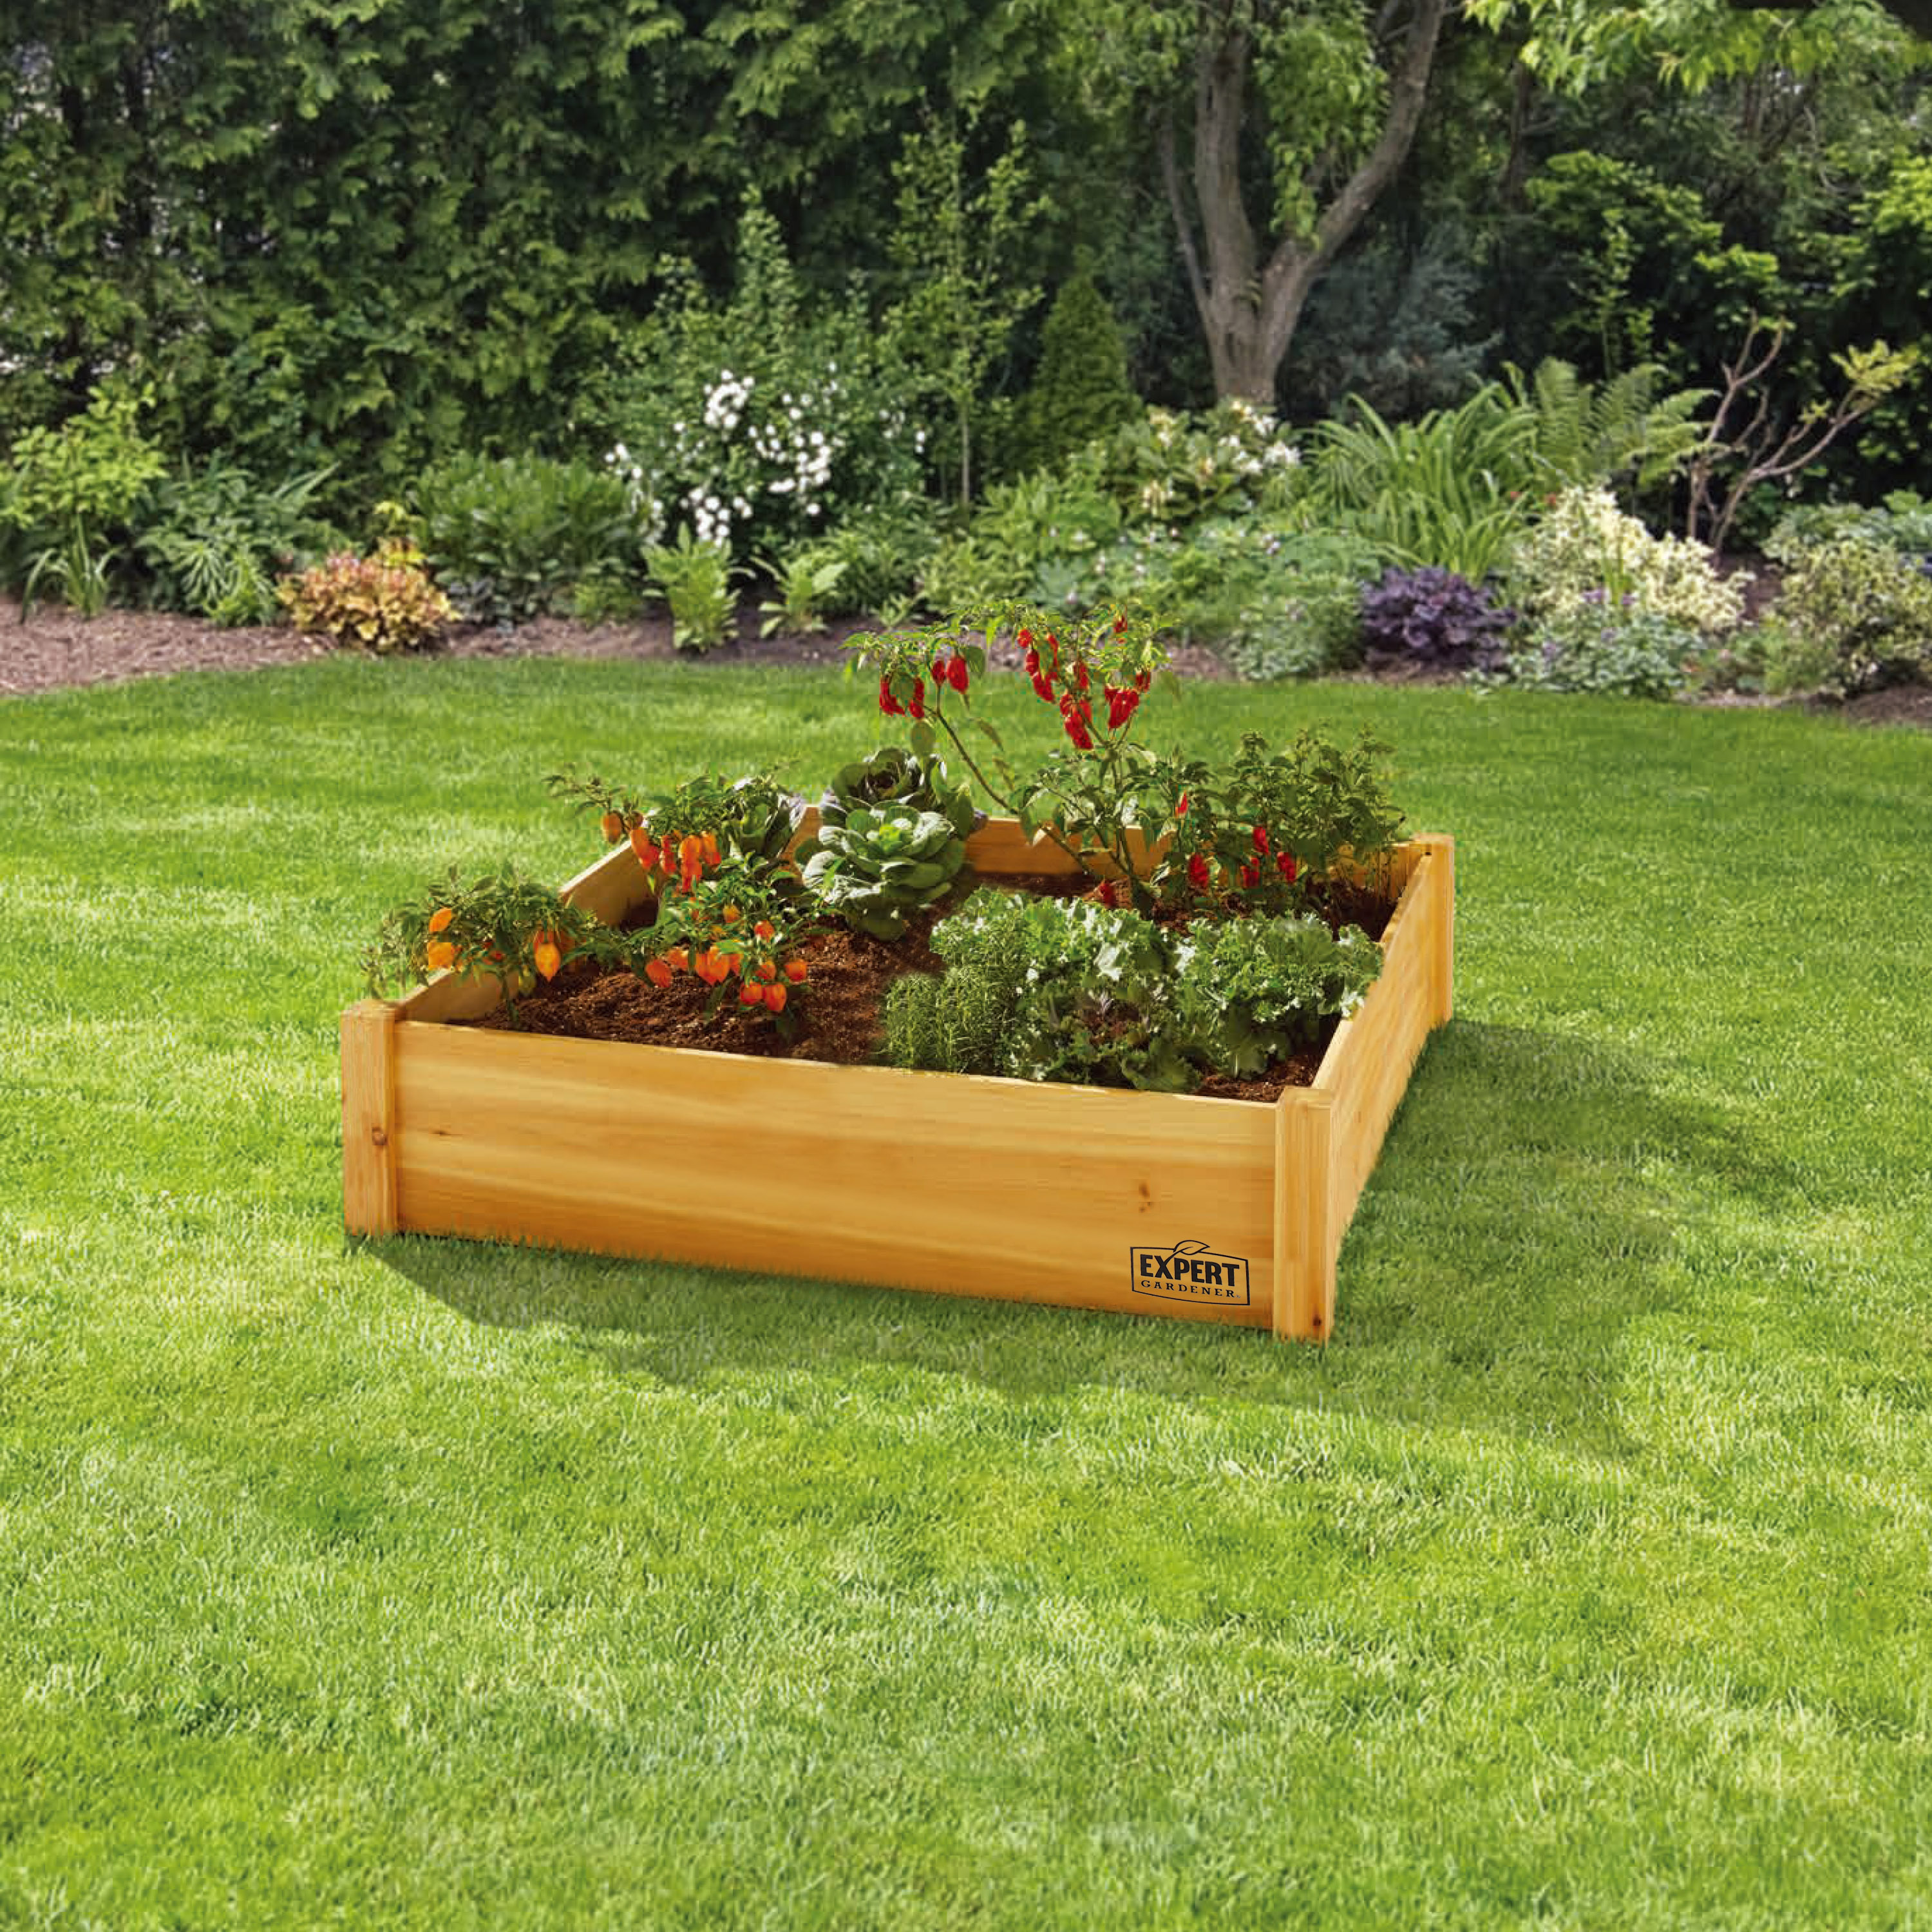 Expert Gardener Ground Wood Outdoor Garden Bed -Natural, 4 ft L x 4 ft W x 11 in H - image 1 of 8